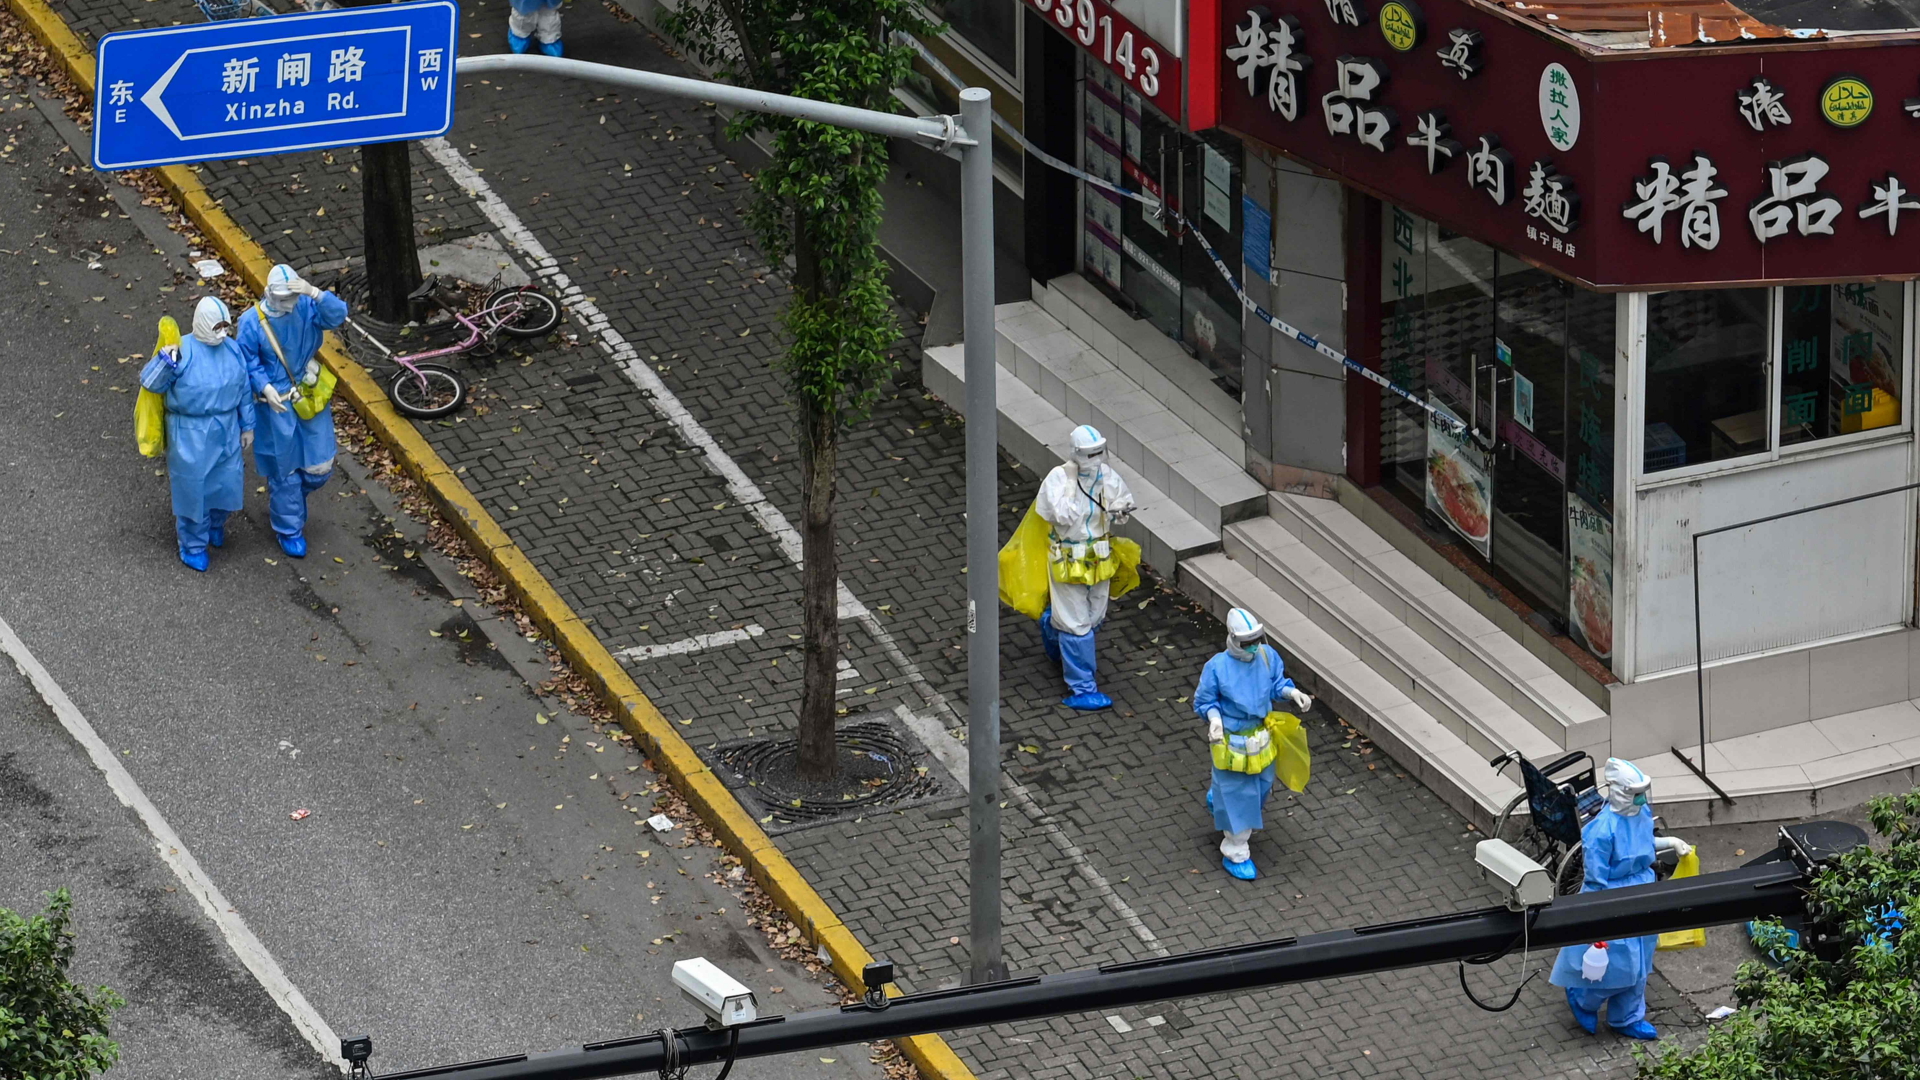 Mitarbeiter der Gesundheitsdienste in Schutzanzügen auf einer Straße in Shanghai | AFP